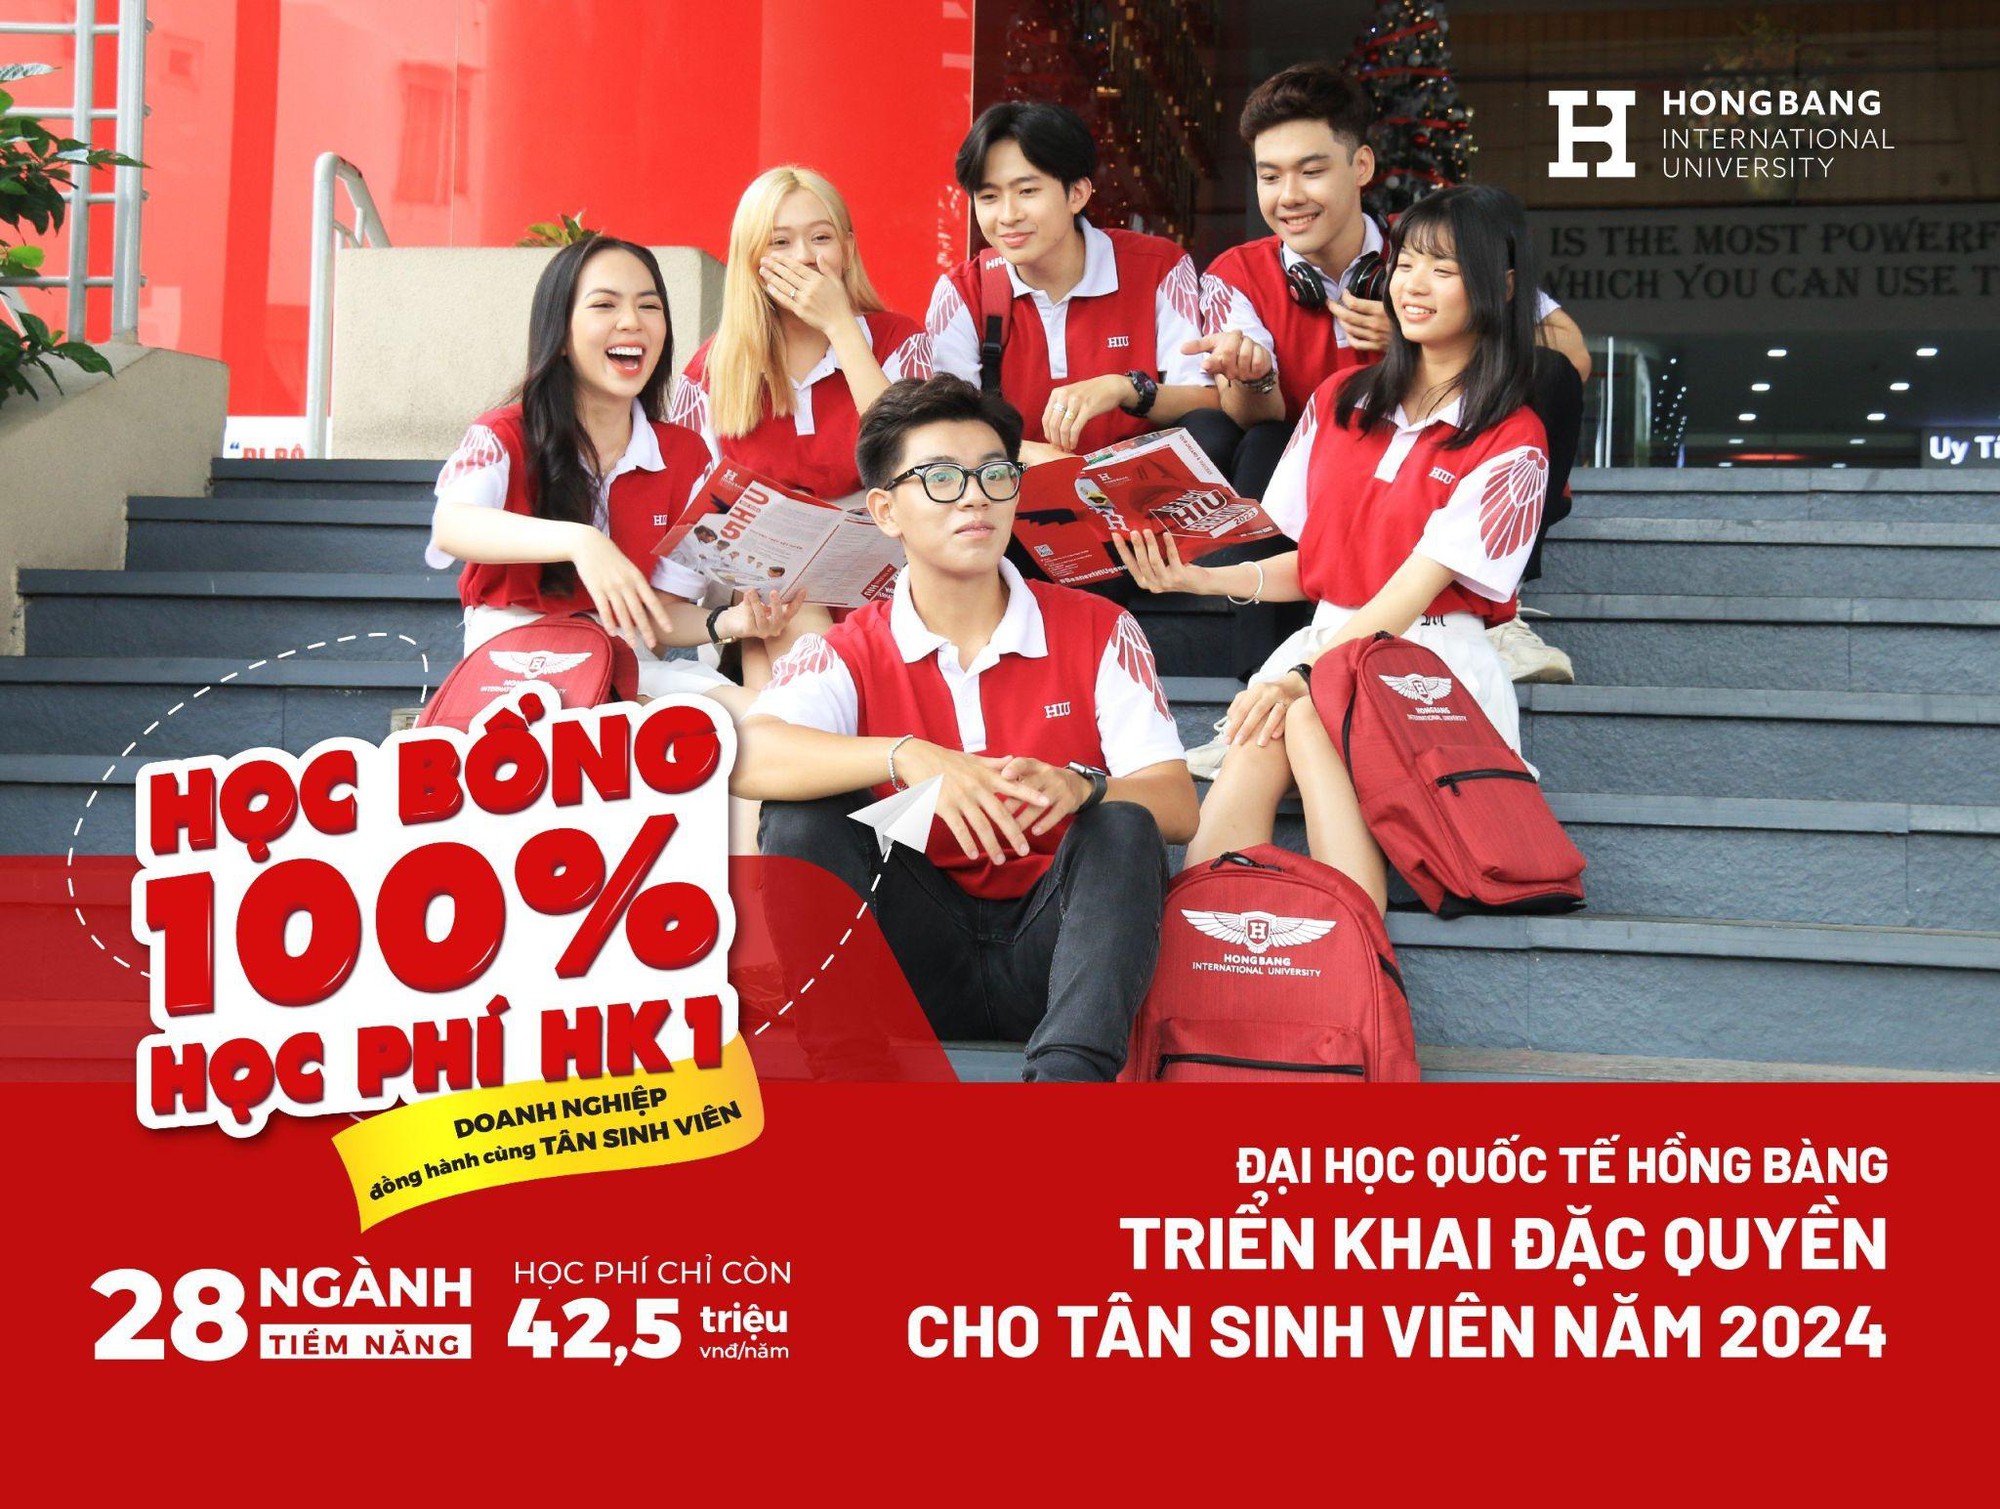 Đại học Quốc tế Hồng Bàng triển khai đặc quyền cho tân sinh viên năm 2024: Học bổng 100% học phí học kỳ I - Ảnh 1.